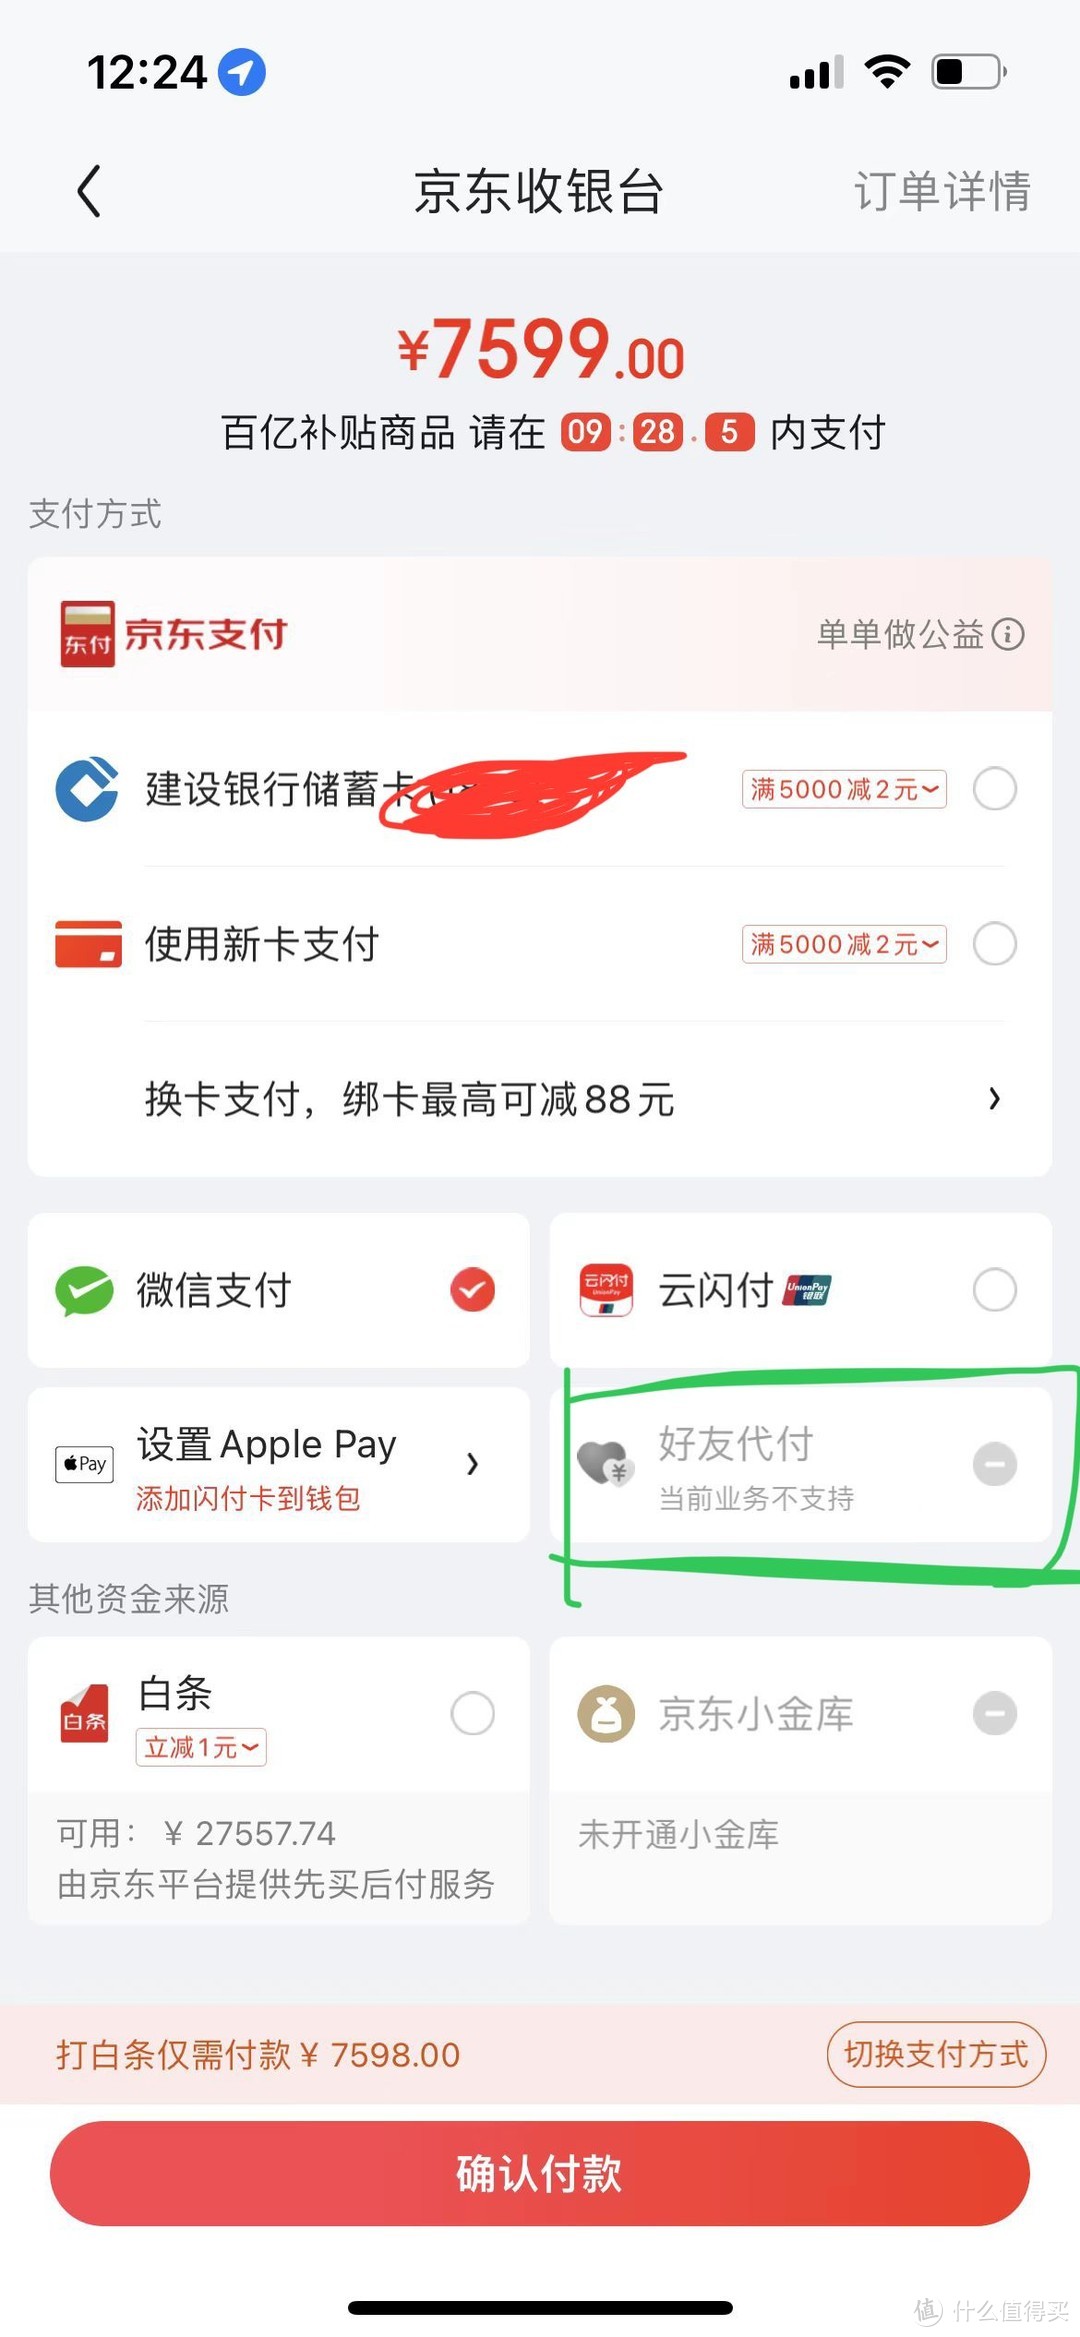 『顺畅丝滑』7599的iPhone 14 Pro京东百亿补贴下车记